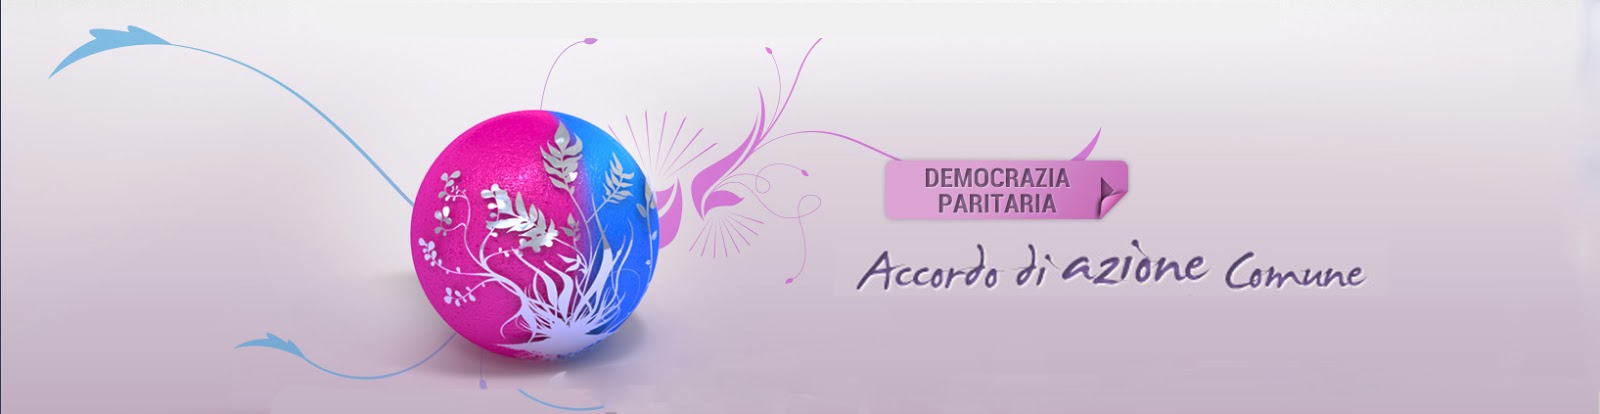 Accordo di azione comune democrazia paritaria